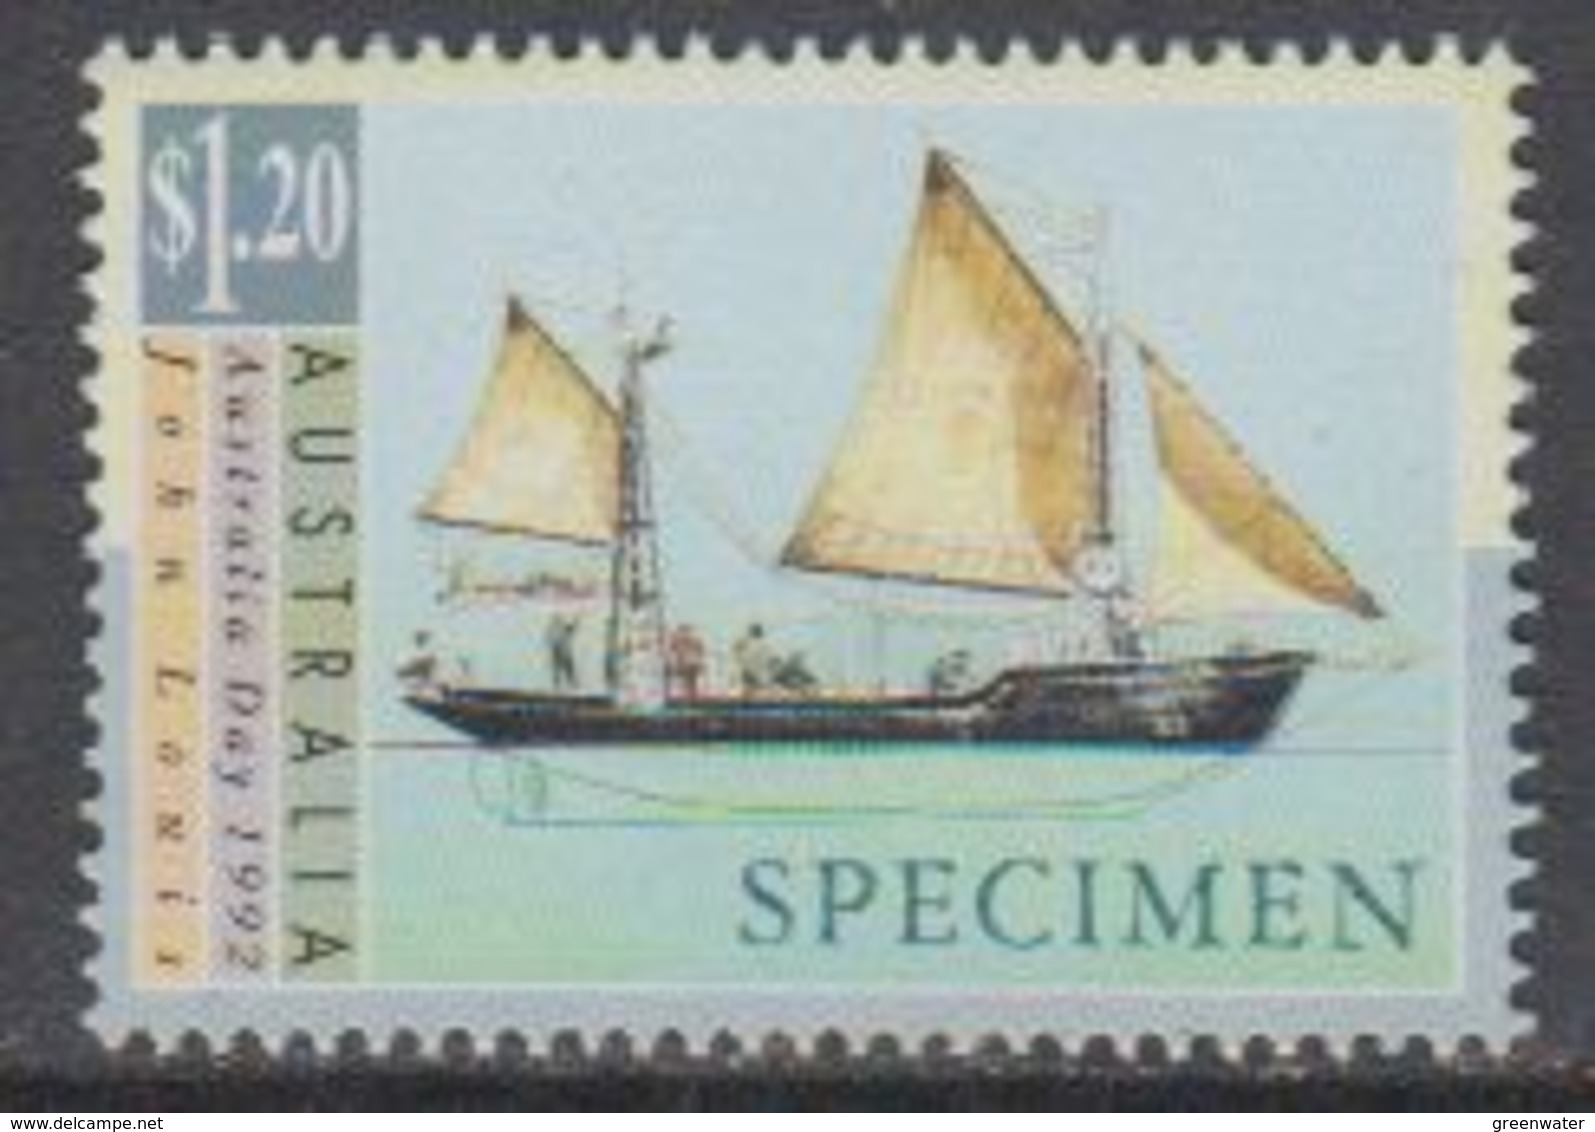 Australia 1992 Australia Day * Sailing Ship 1v "Specimen" ** Mnh (40847F) - Ongebruikt